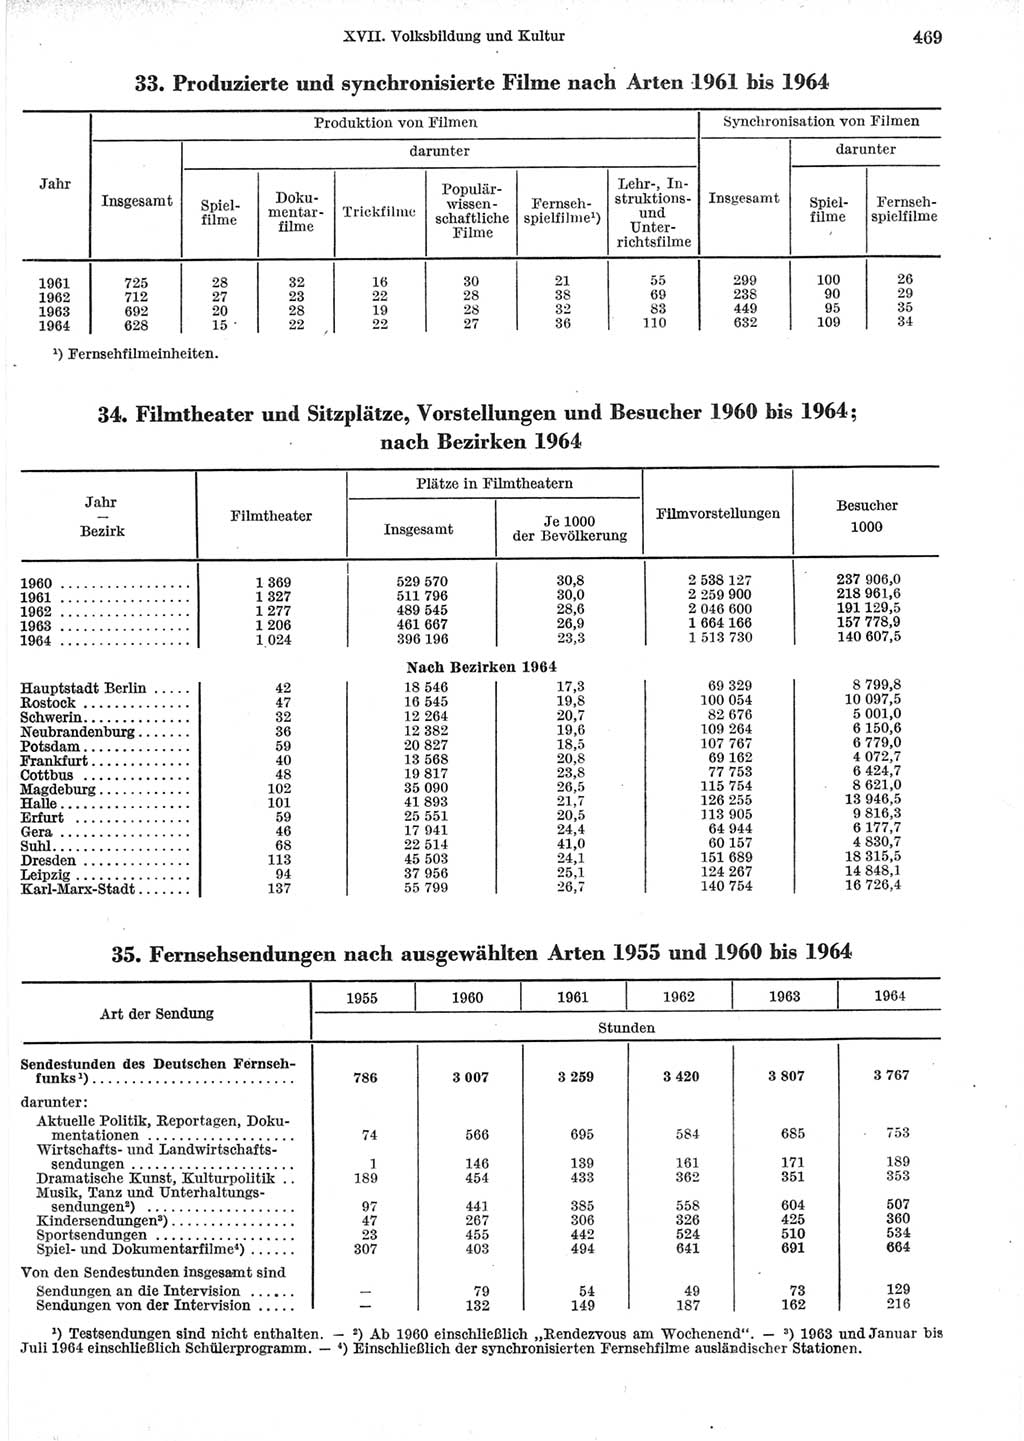 Statistisches Jahrbuch der Deutschen Demokratischen Republik (DDR) 1965, Seite 469 (Stat. Jb. DDR 1965, S. 469)